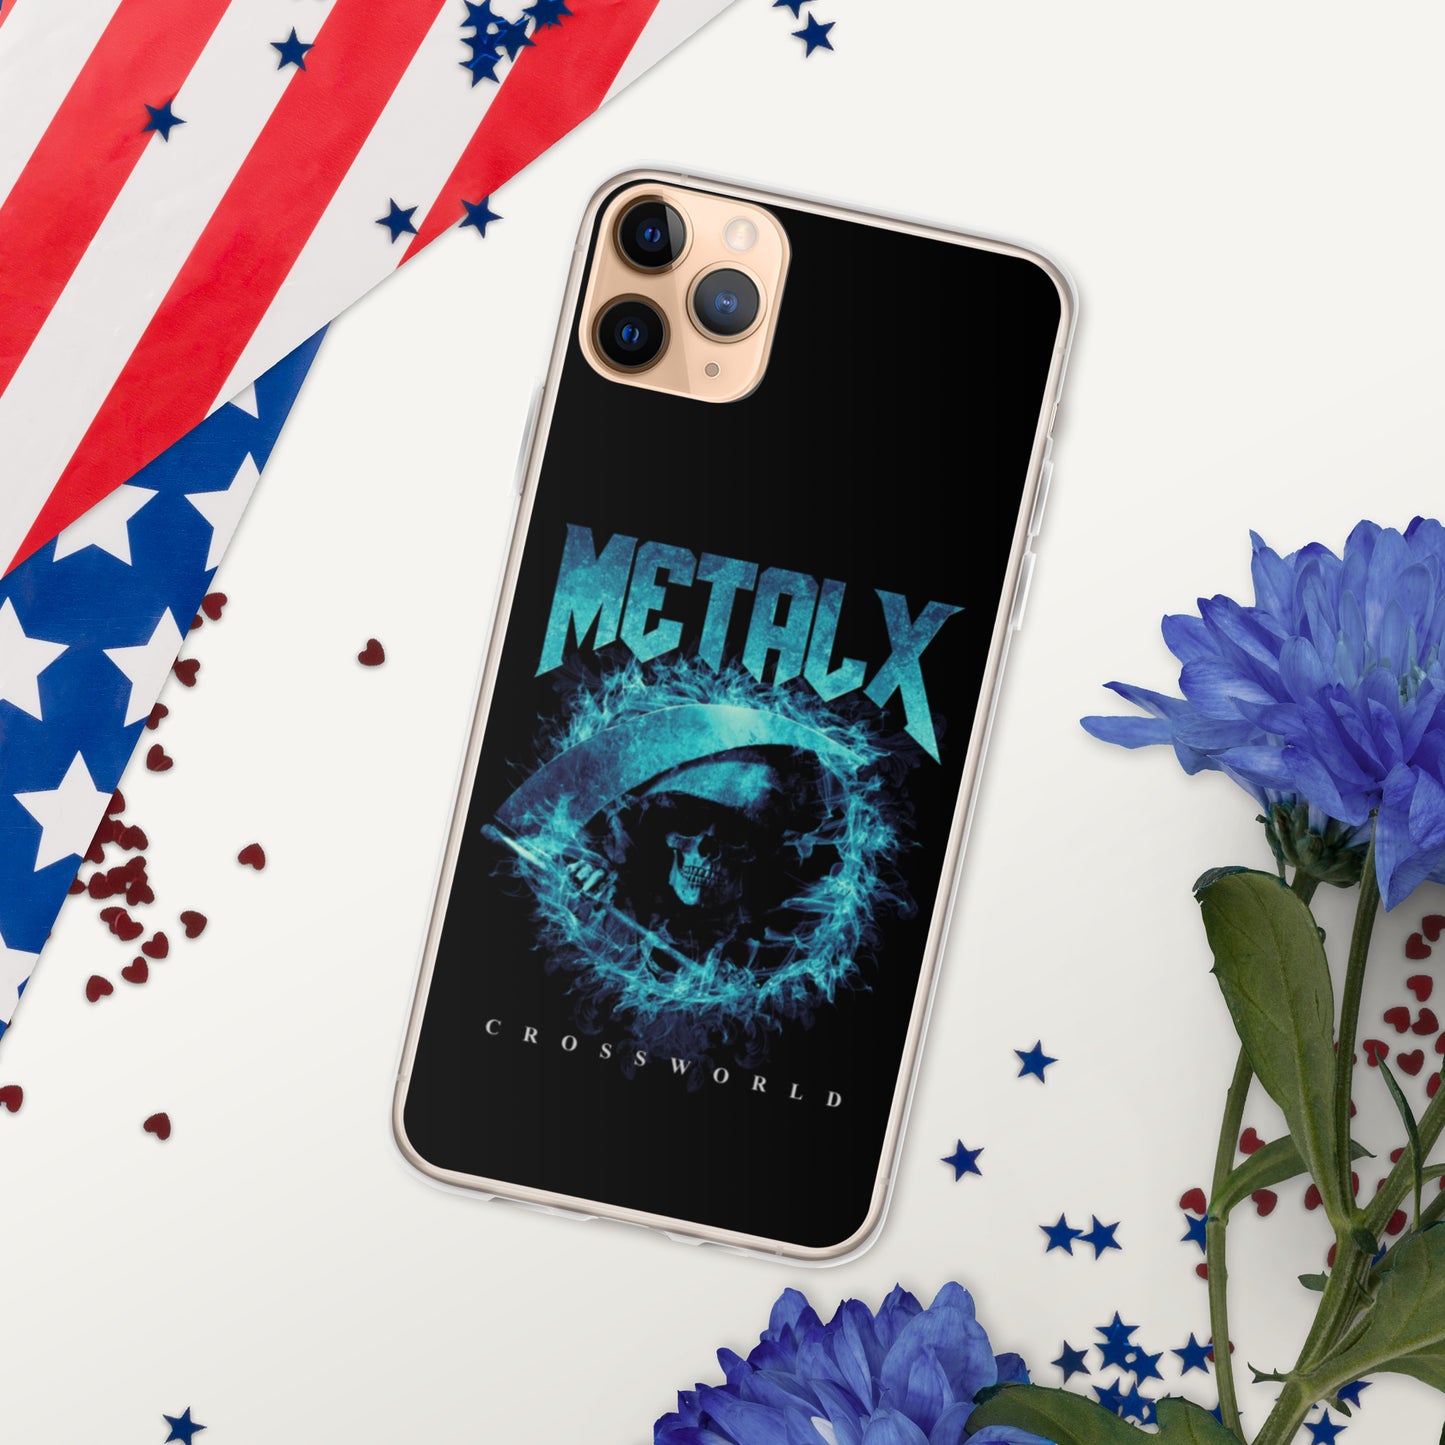 MetalX - iPhone Case